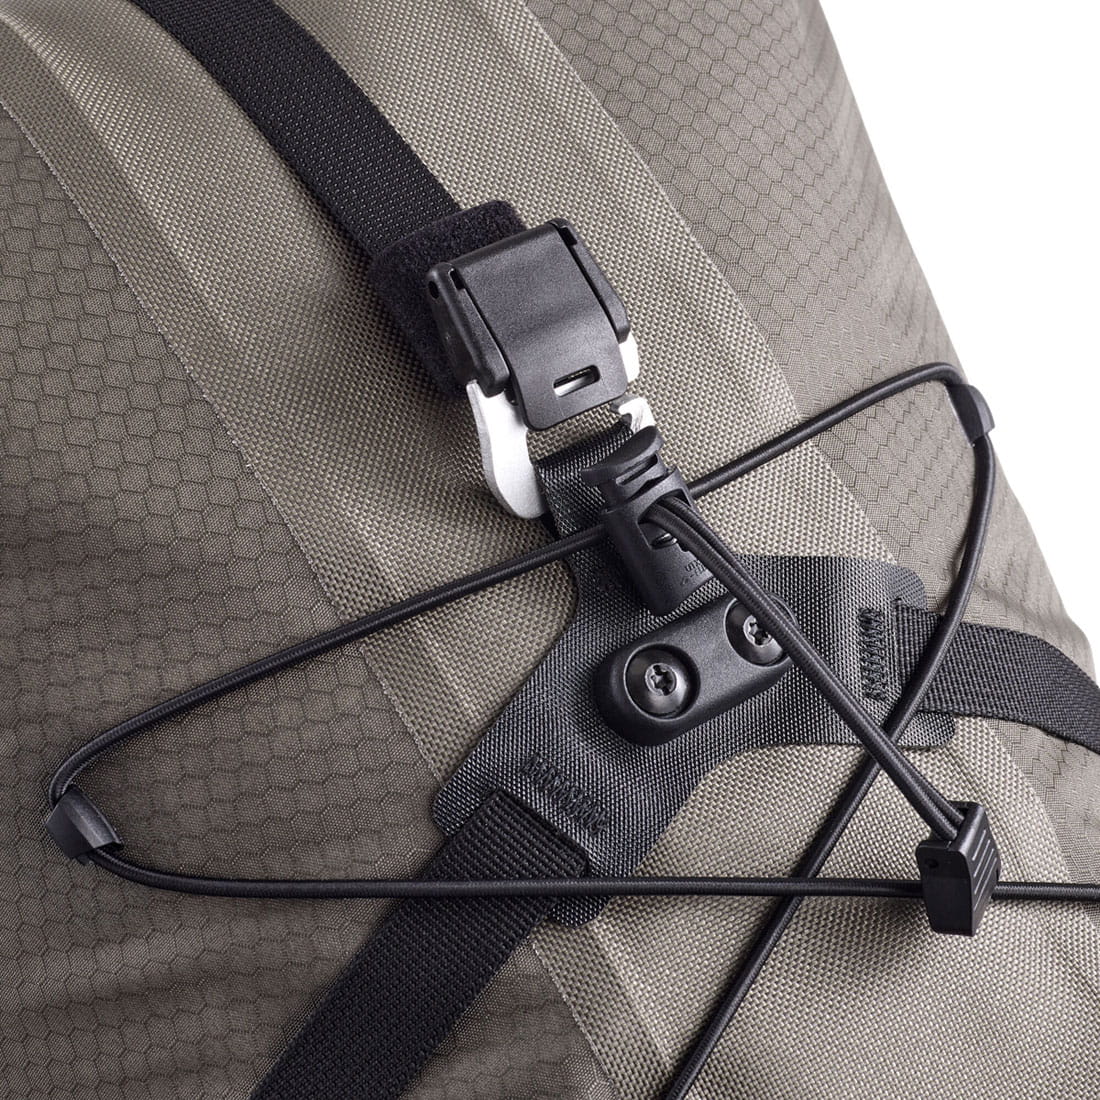 Ortlieb Seat-Pack QR Saddlebag 13L black matt